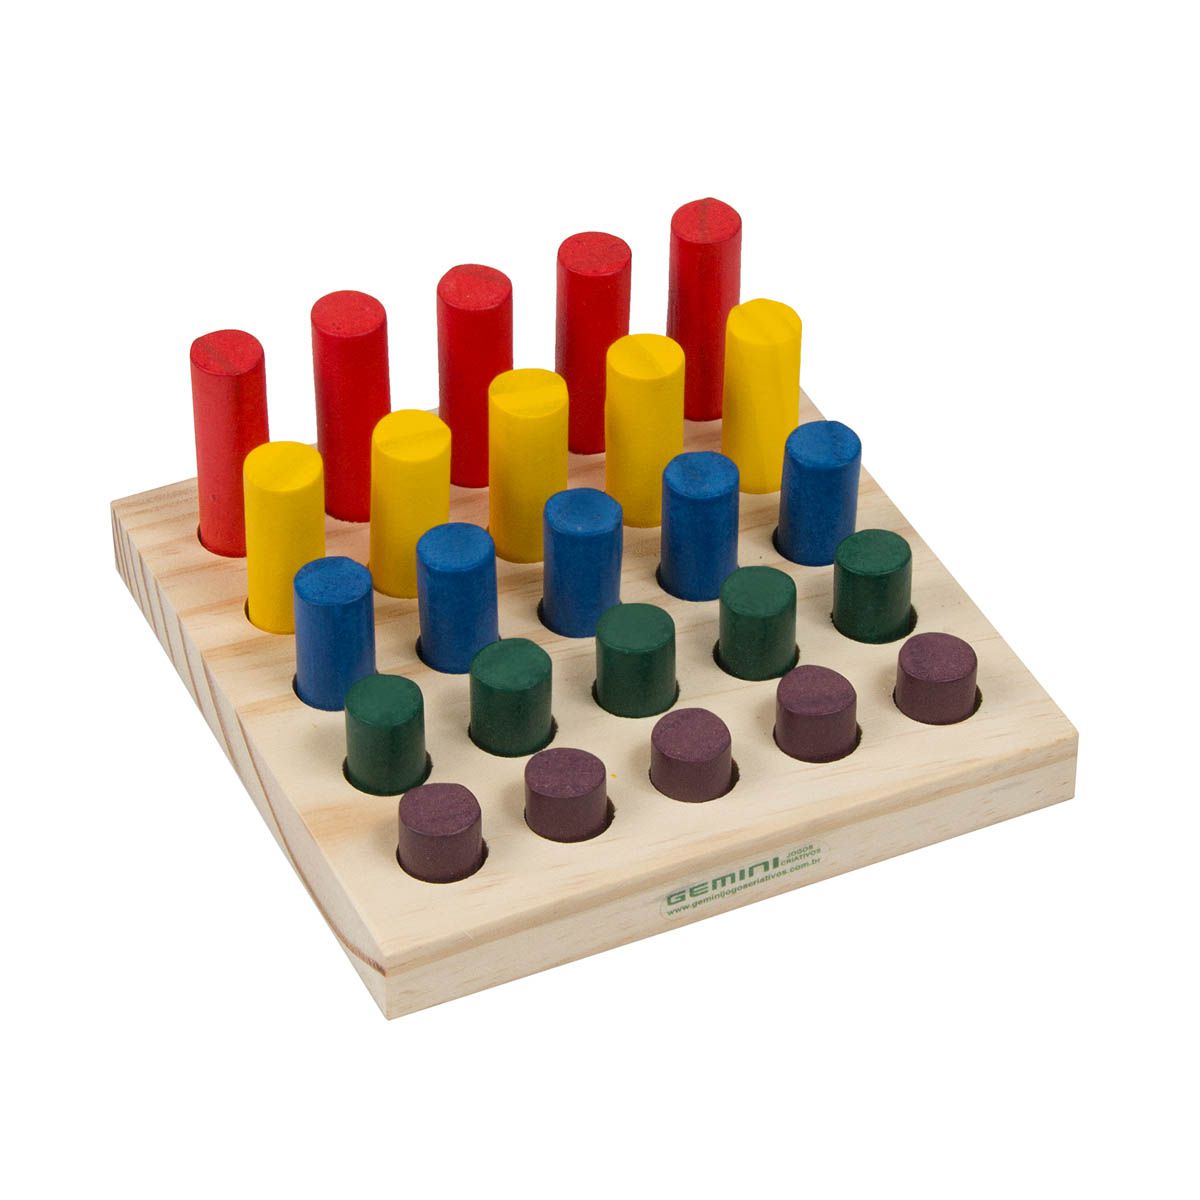 Torre de Equilíbrio - Brinquedo de Equilíbrio Jogo Educativo Montessori -  Brinquedos Educativos e Pedagógicos - Gemini Jogos Criativos